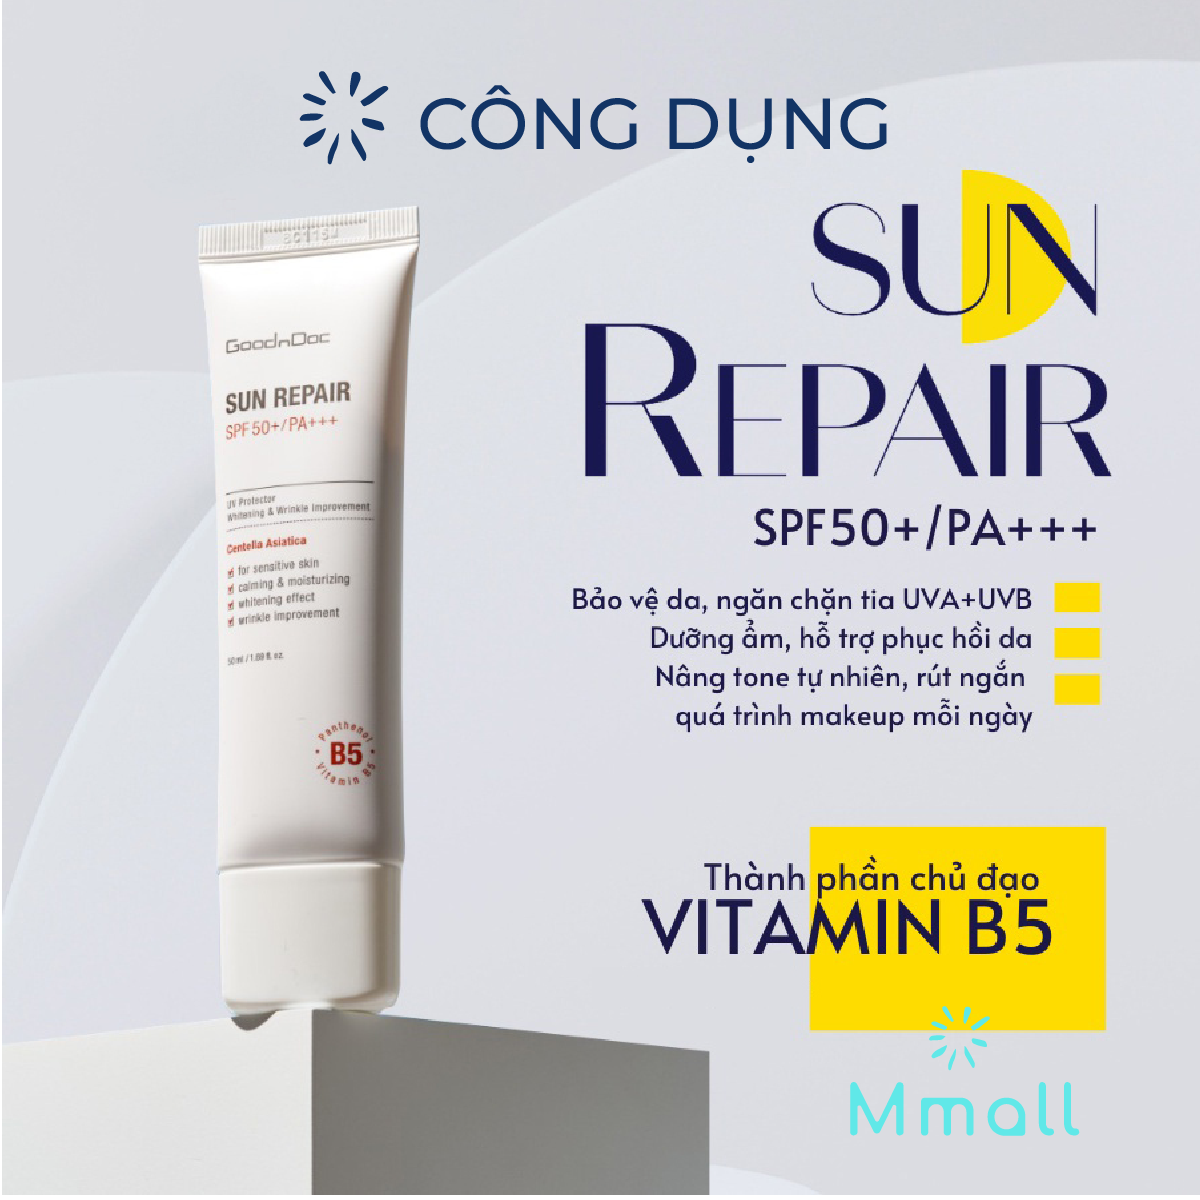 Kem chống nắng nâng tông da mặt GoodnDoc Sun Repair SPF50+ PA+++ Hàn Quốc Chiết xuất Rau má Tràm Trà Vitamin B5 cho da dầu mụn